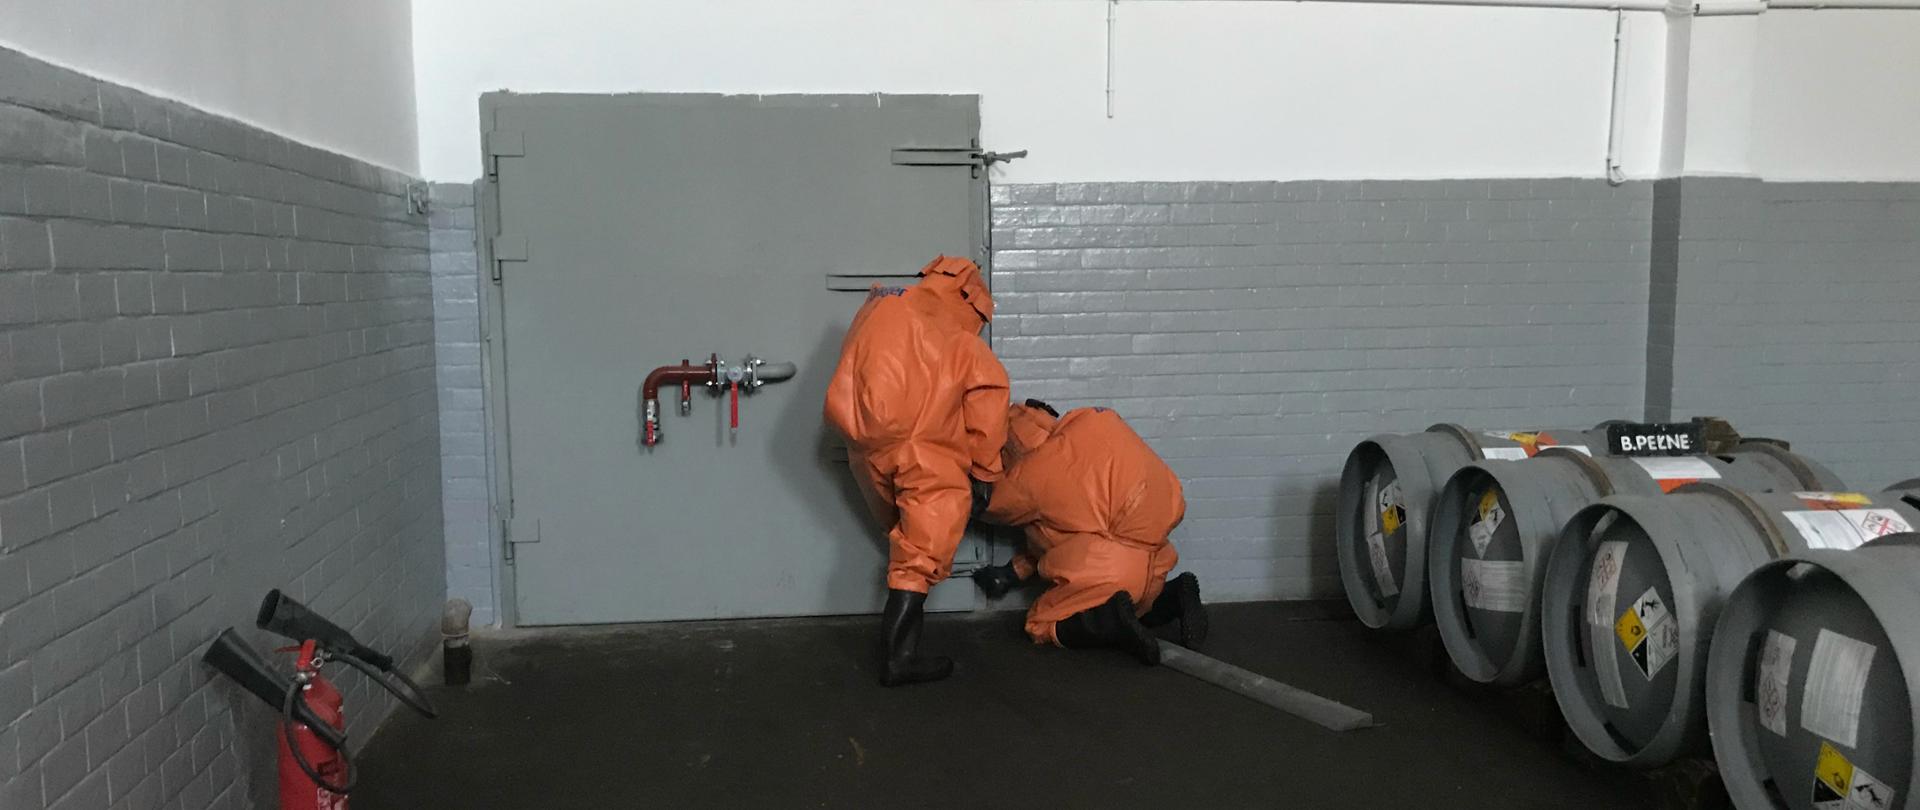 ćwiczenia chemiczne w Stacji Uzdatniania Wody Zawada w Zielonej Górze - strażacy w specjalistycznym ubraniu zamykają śluzę